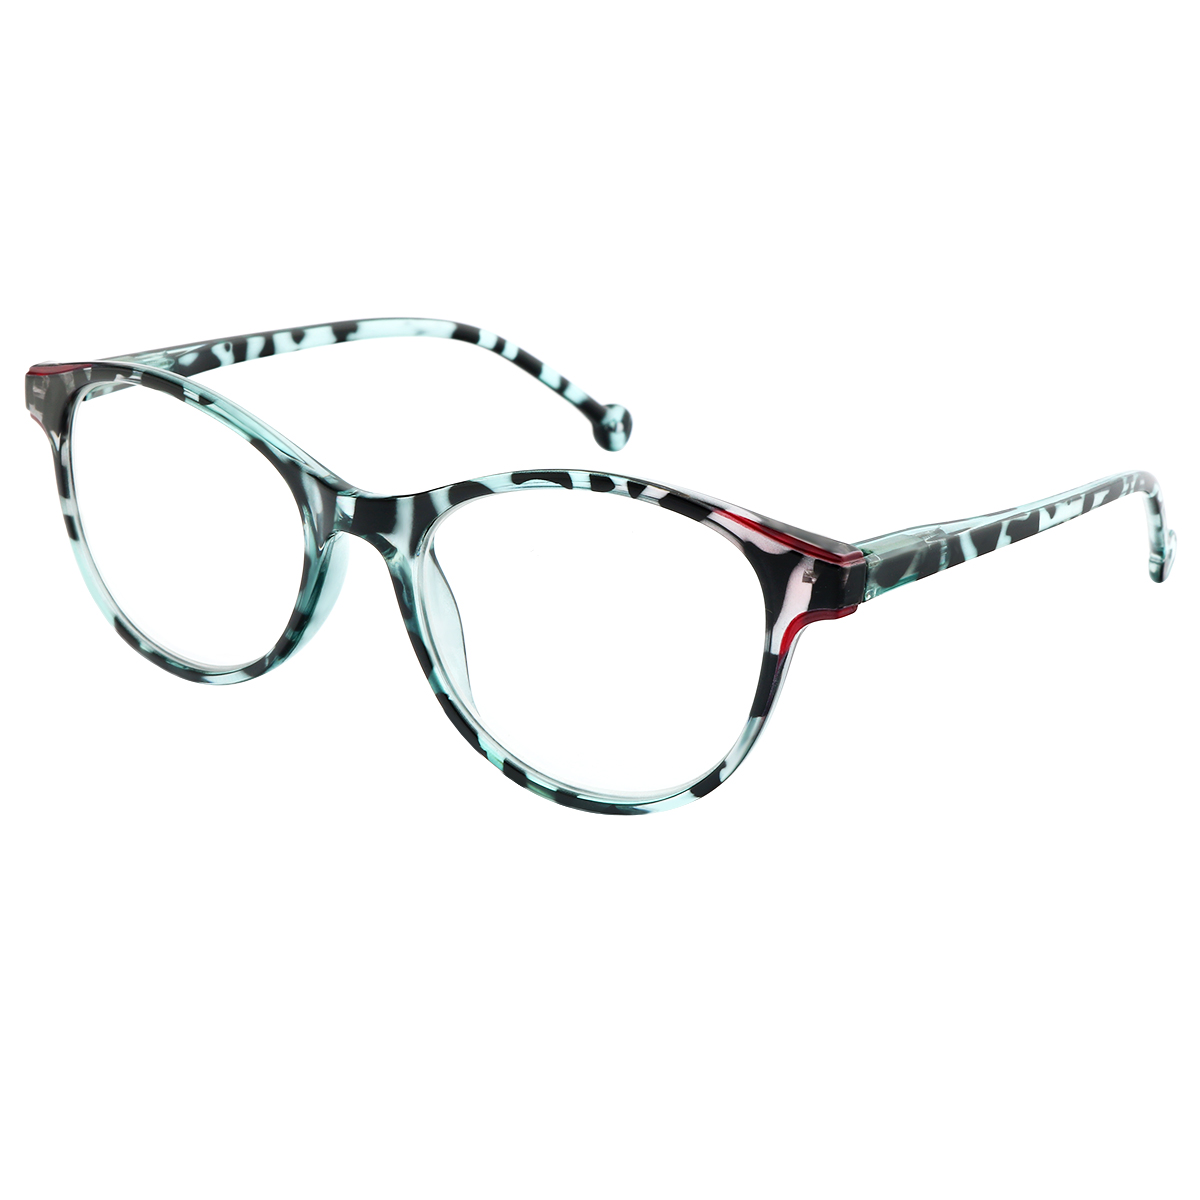 Lesley - Cat-eye Blue Reading Glasses for Women